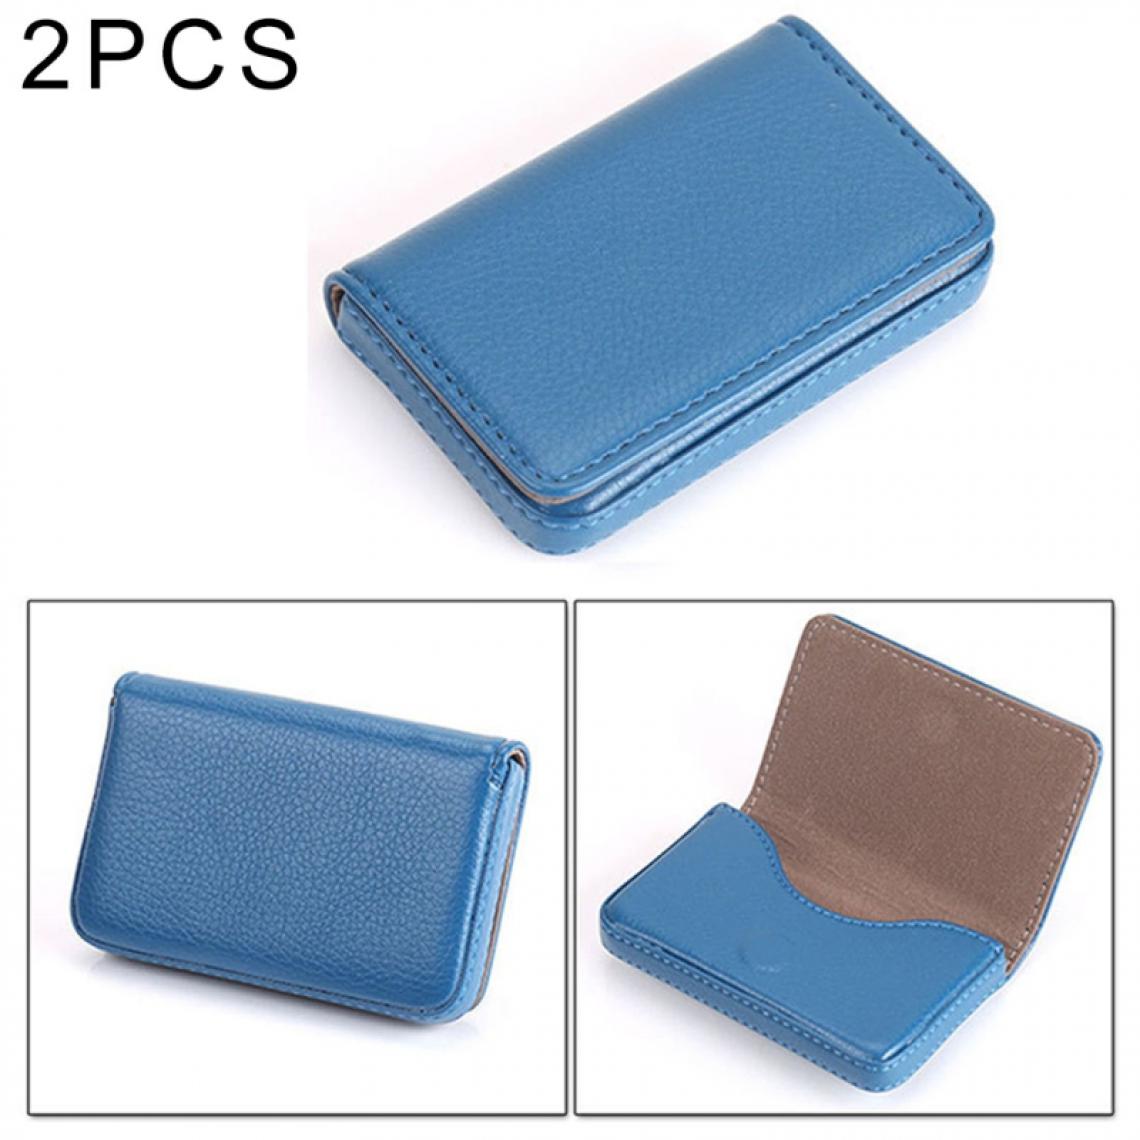 Wewoo - Porte-cartes bleu 2 PCS Premium PU étui en cuir avec fermeture magnétique, taille: 10 * 6.5 * 1.7cm - Accessoires Bureau